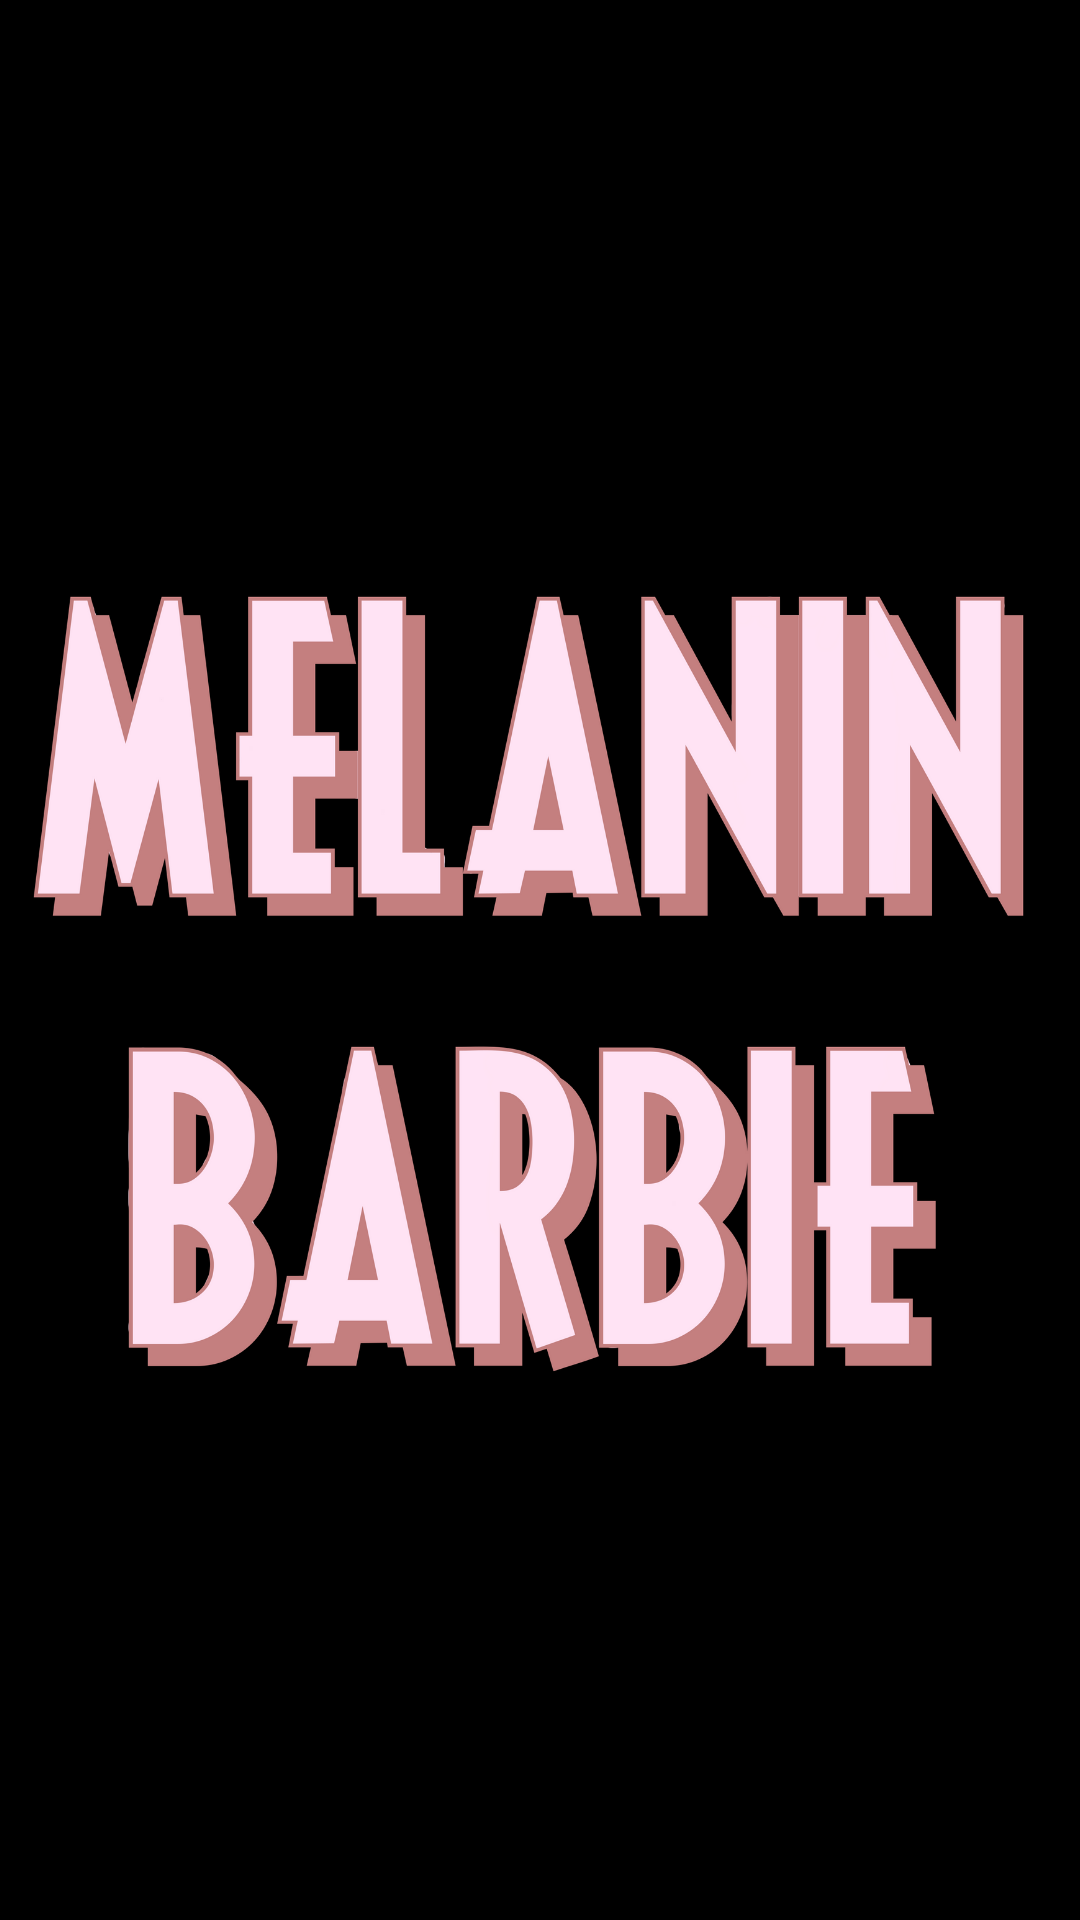 Pastel Melanin Barbie Sticker / Pink Aesthetic BLM Sticker /. Etsy. Black aesthetic wallpaper, Black girl cartoon, Black girl aesthetic